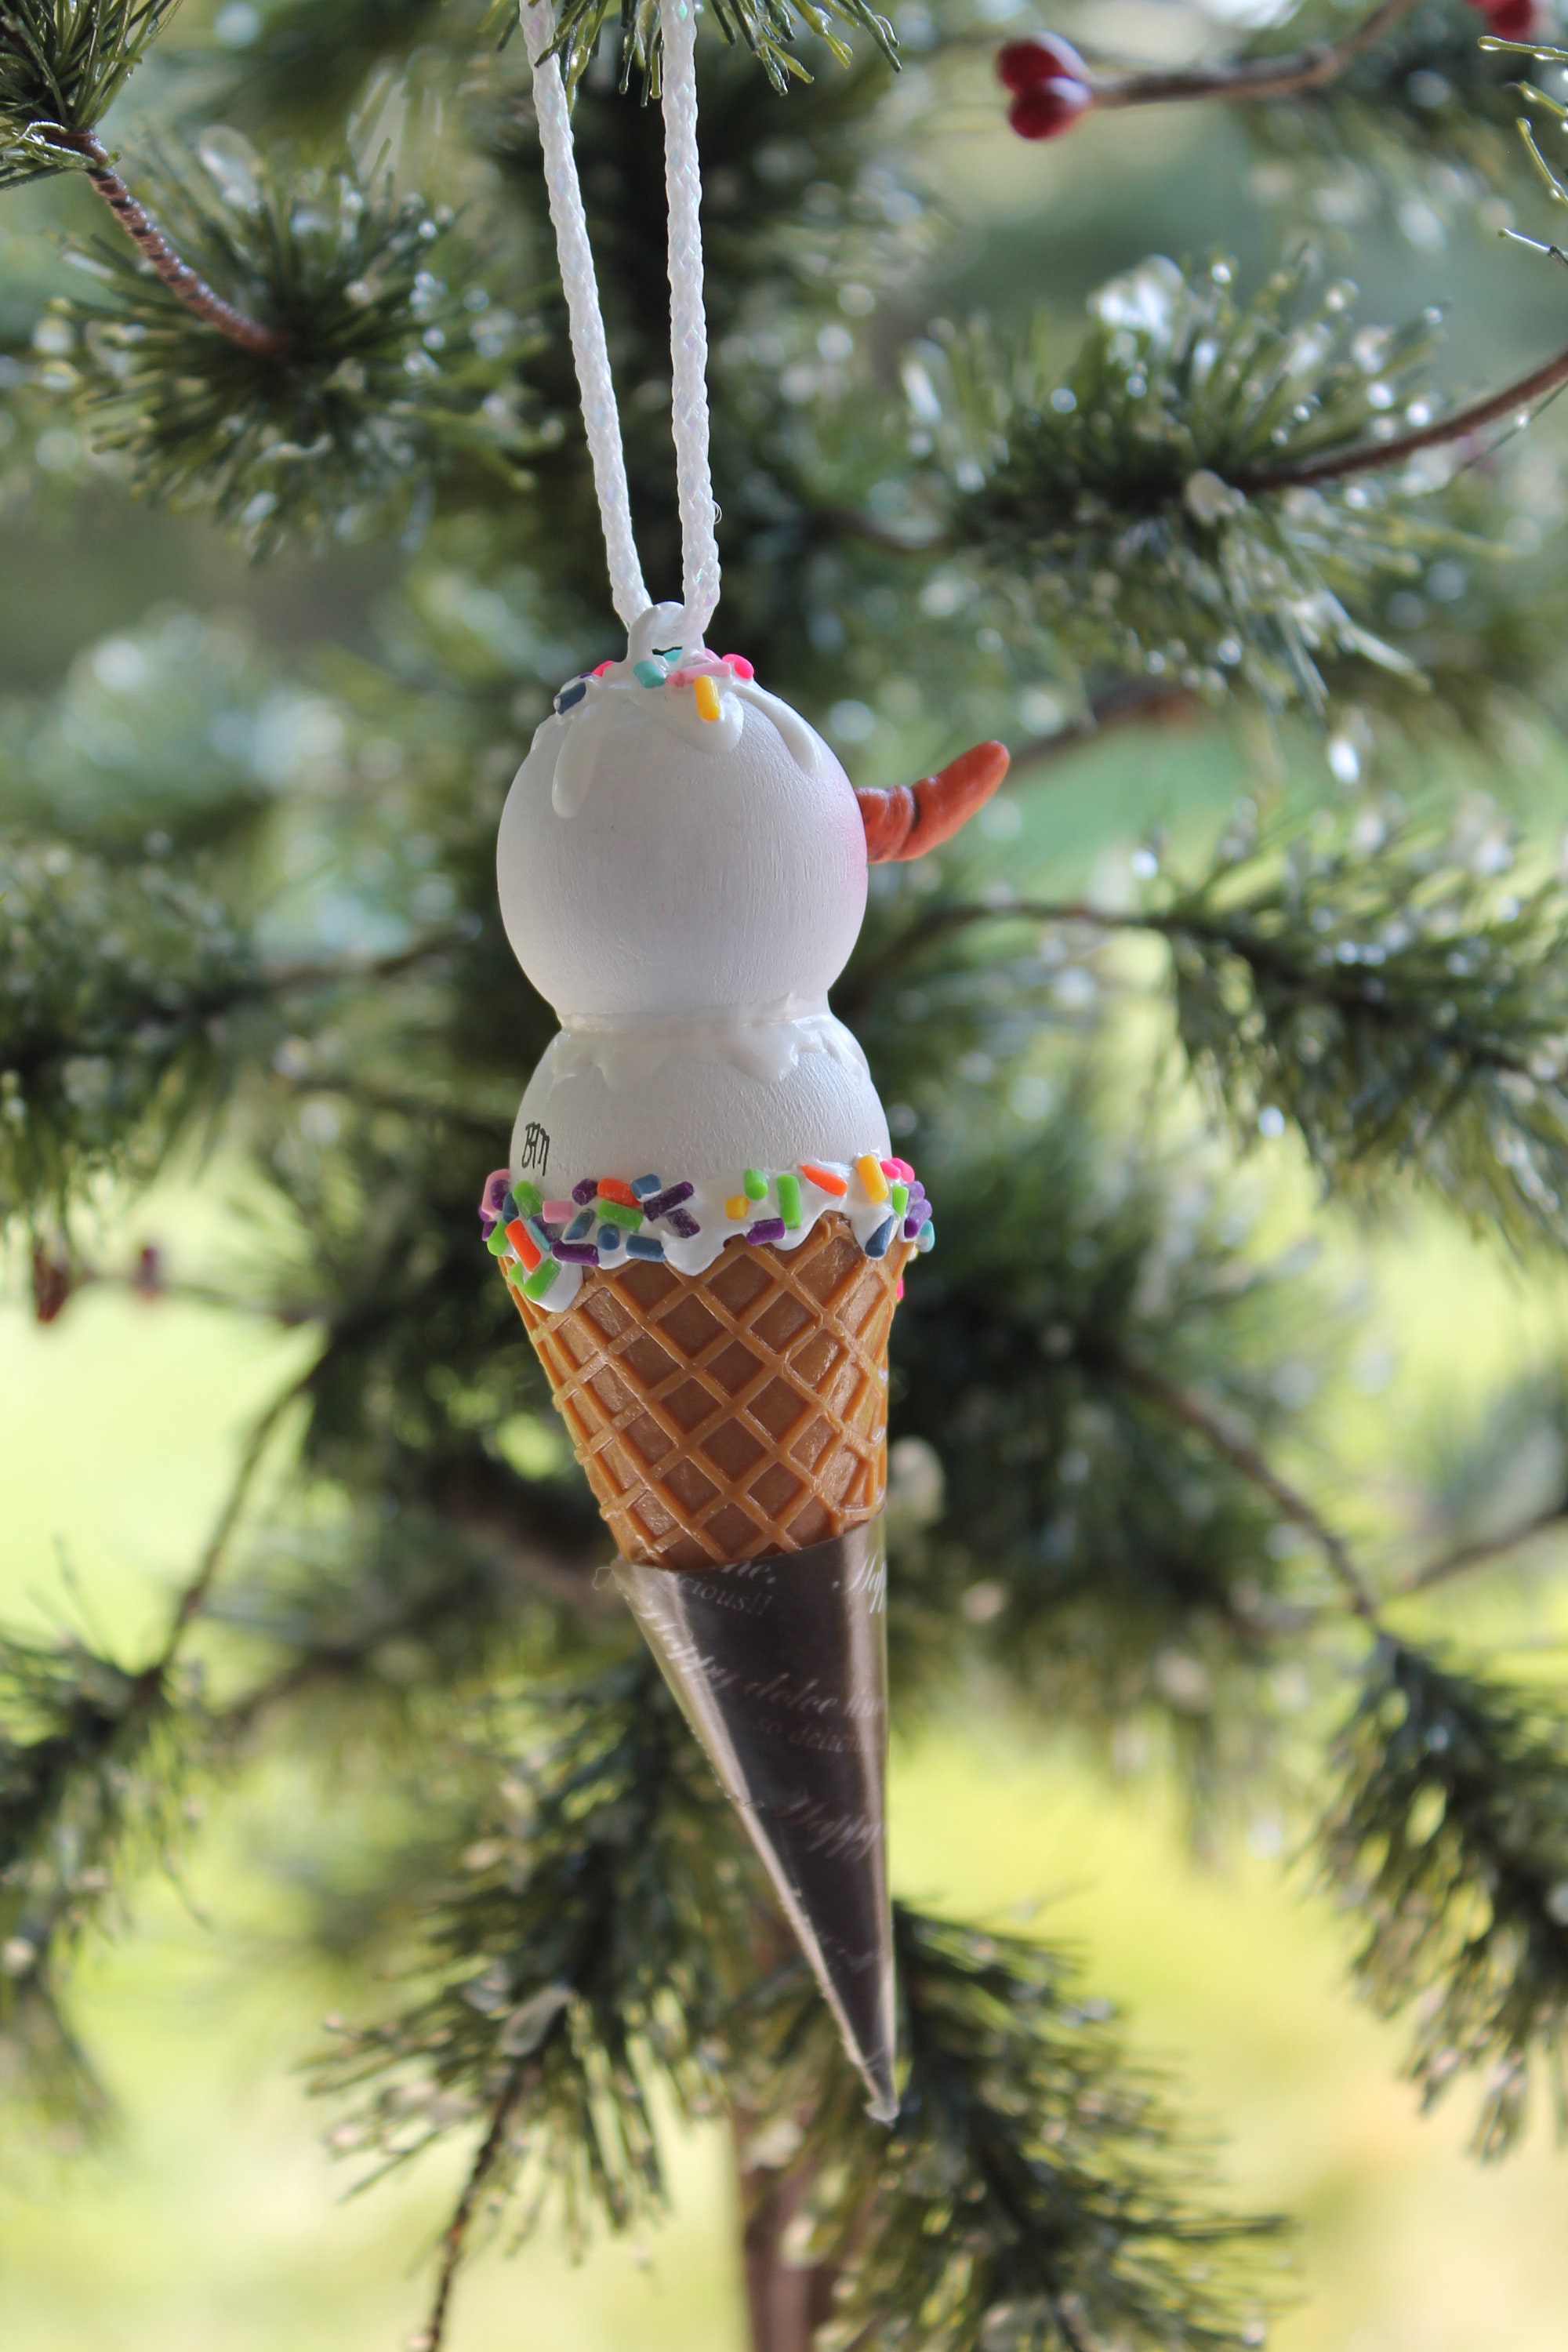 Snowman Ice Cream Cone Ornament Ice Cream Snowman Tree Etsy